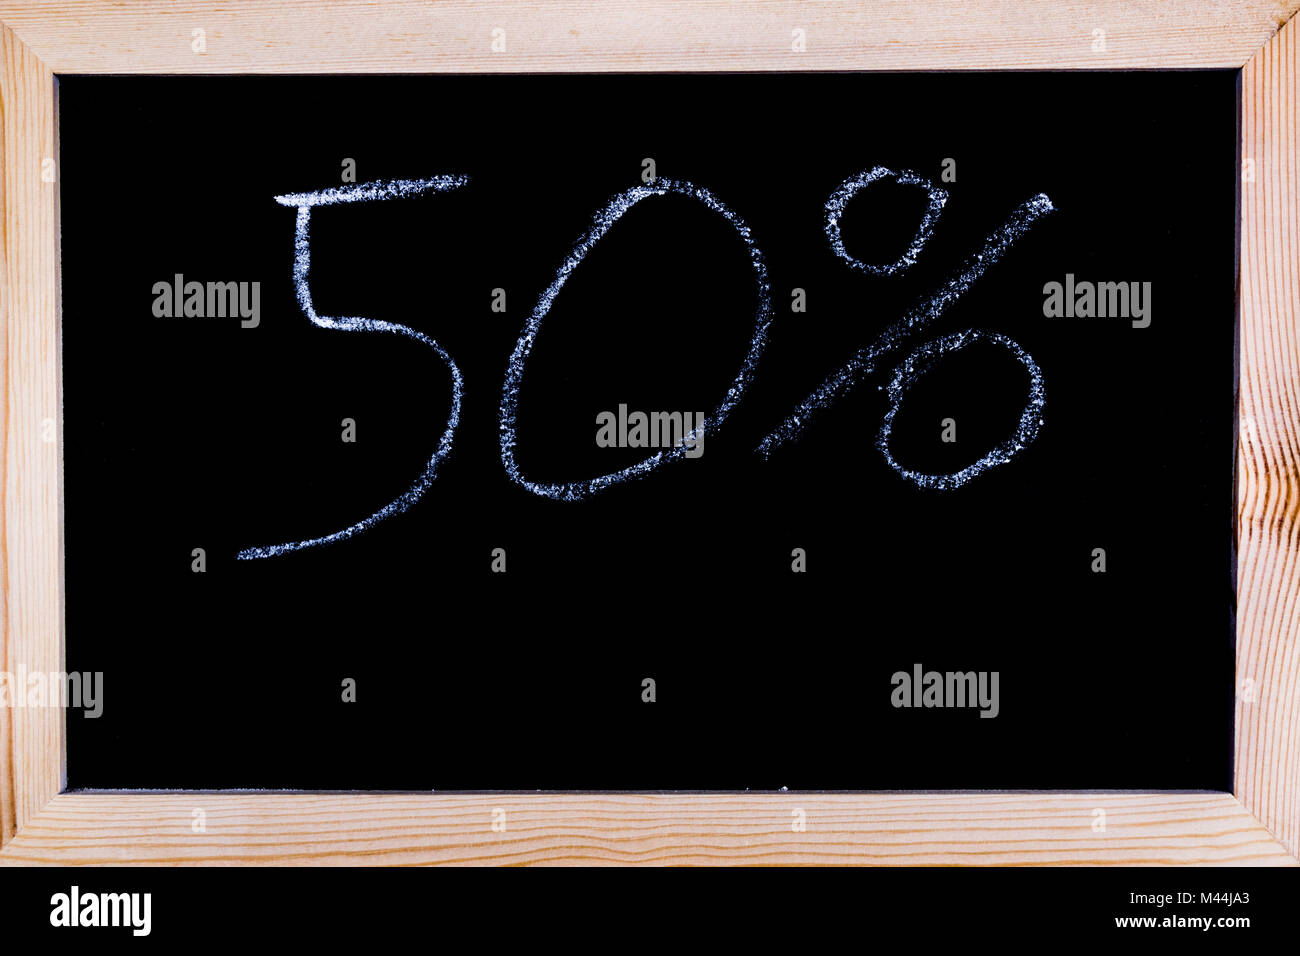 Blackboard with 50% written on it Stock Photo